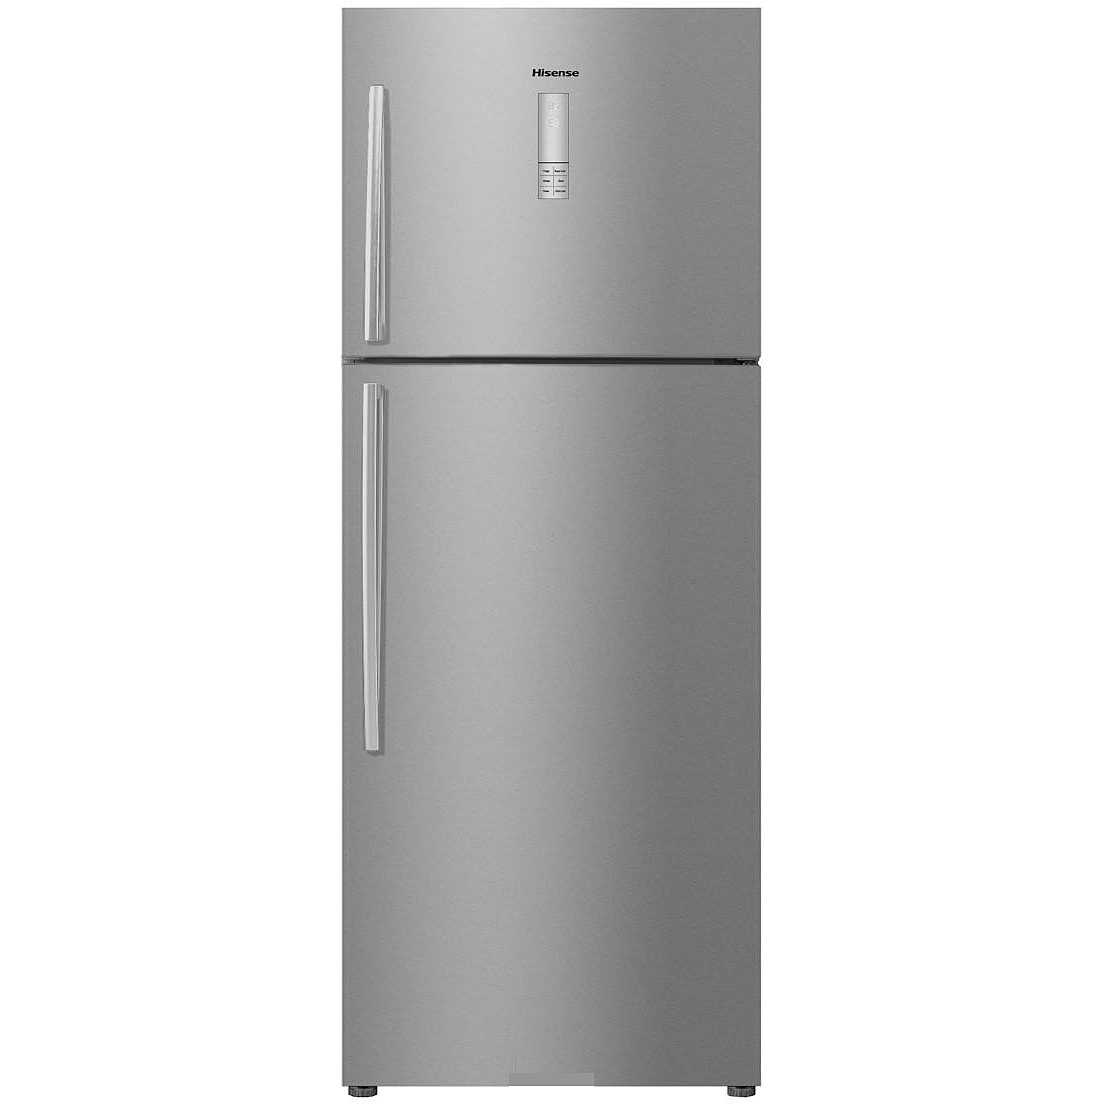 М видео холодильники ноу фрост. Холодильник Hisense rb440n4bc1. Hisense холодильник 733709913. Hisense холодильник rc68wcx. Hisense rb372n4aw1.